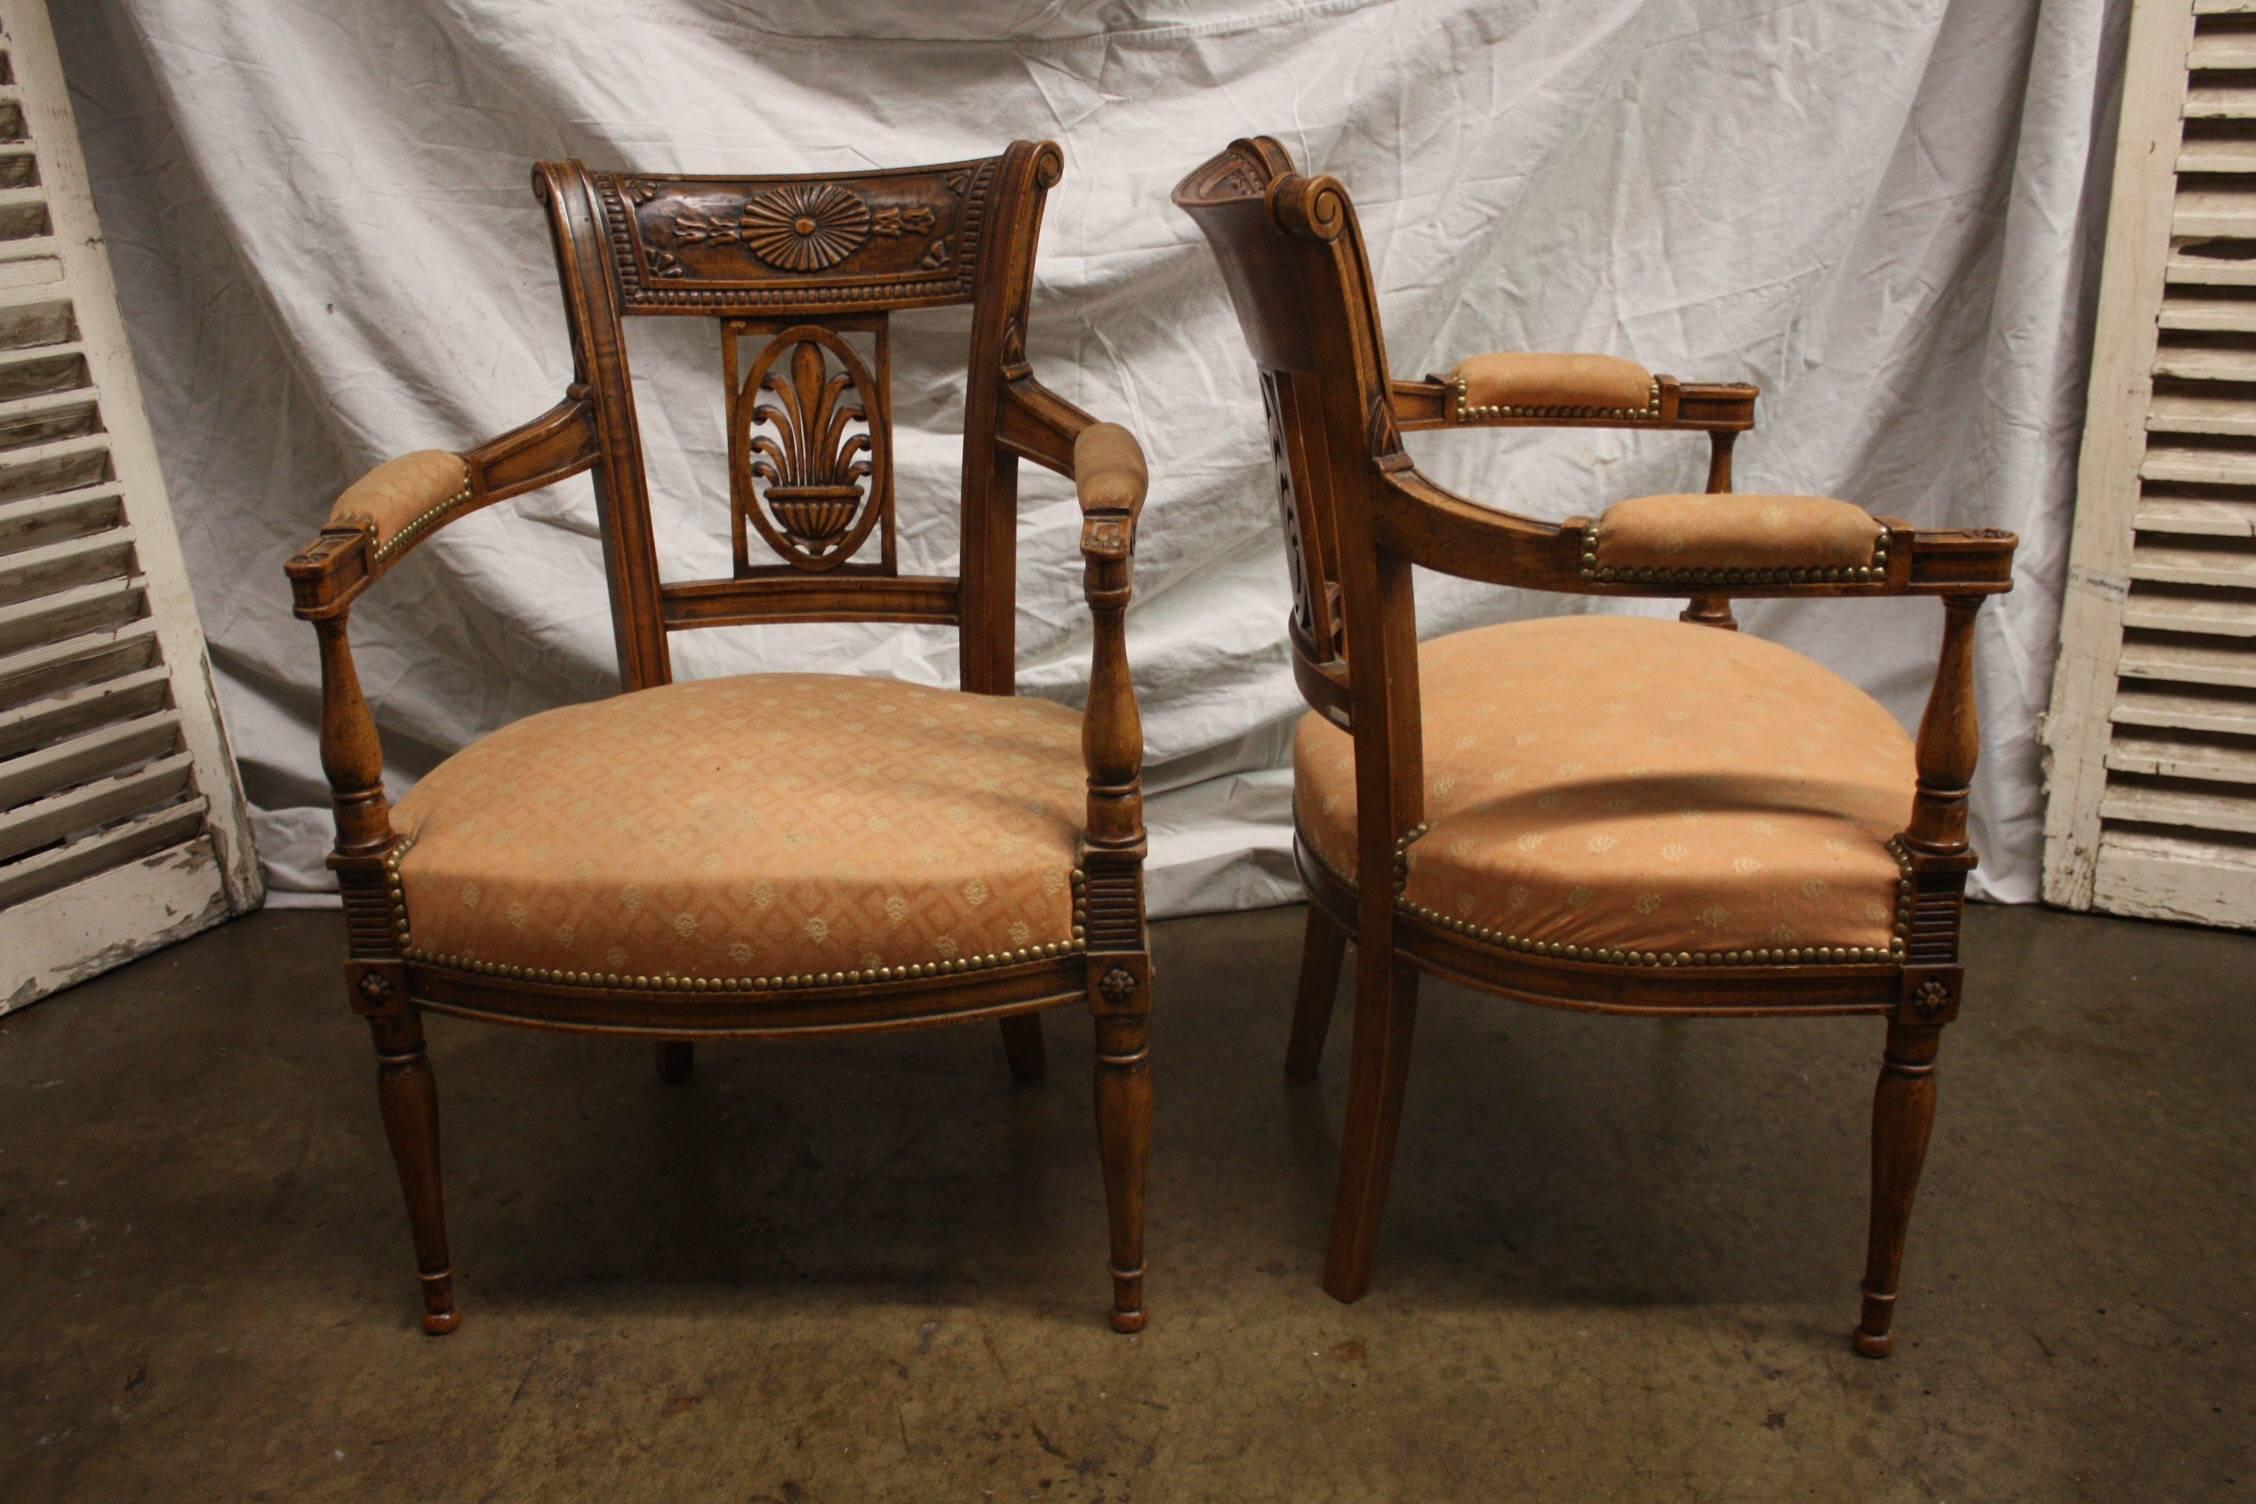 Schönes Paar französische Sessel aus dem 19. Jahrhundert.